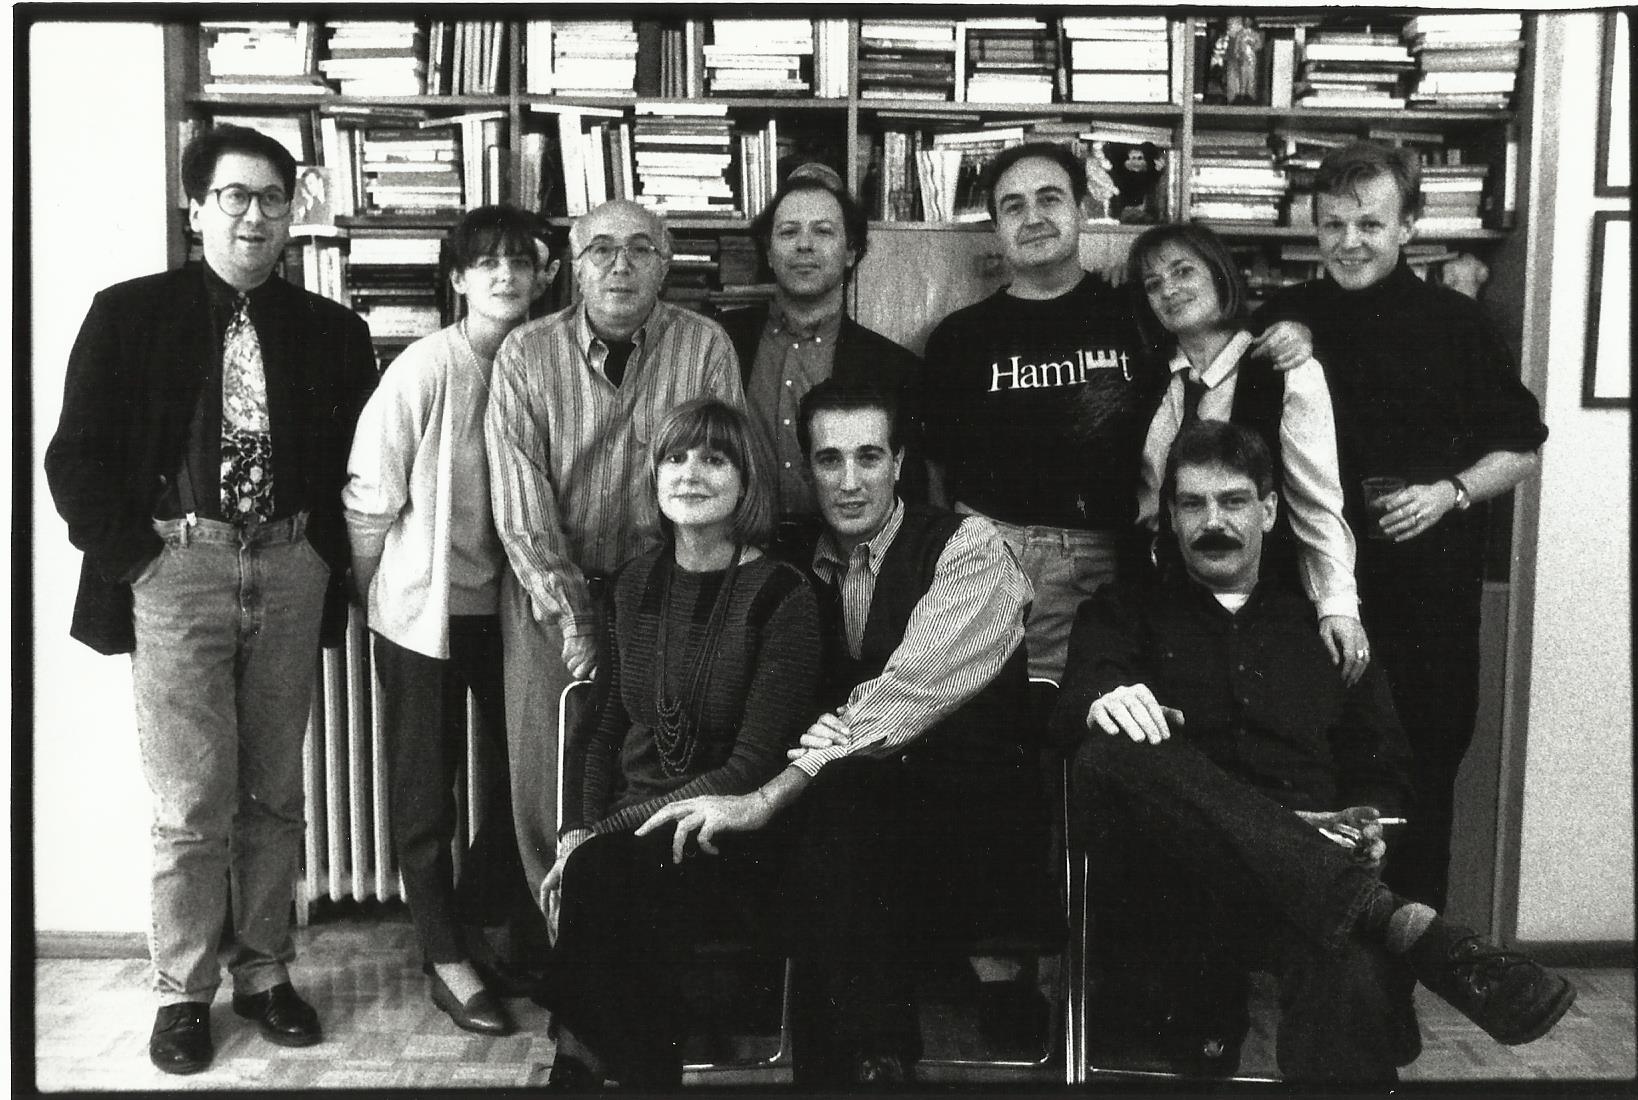 LAdeV, J. Marías, Molina Foix y amigos. Octubre, 1993